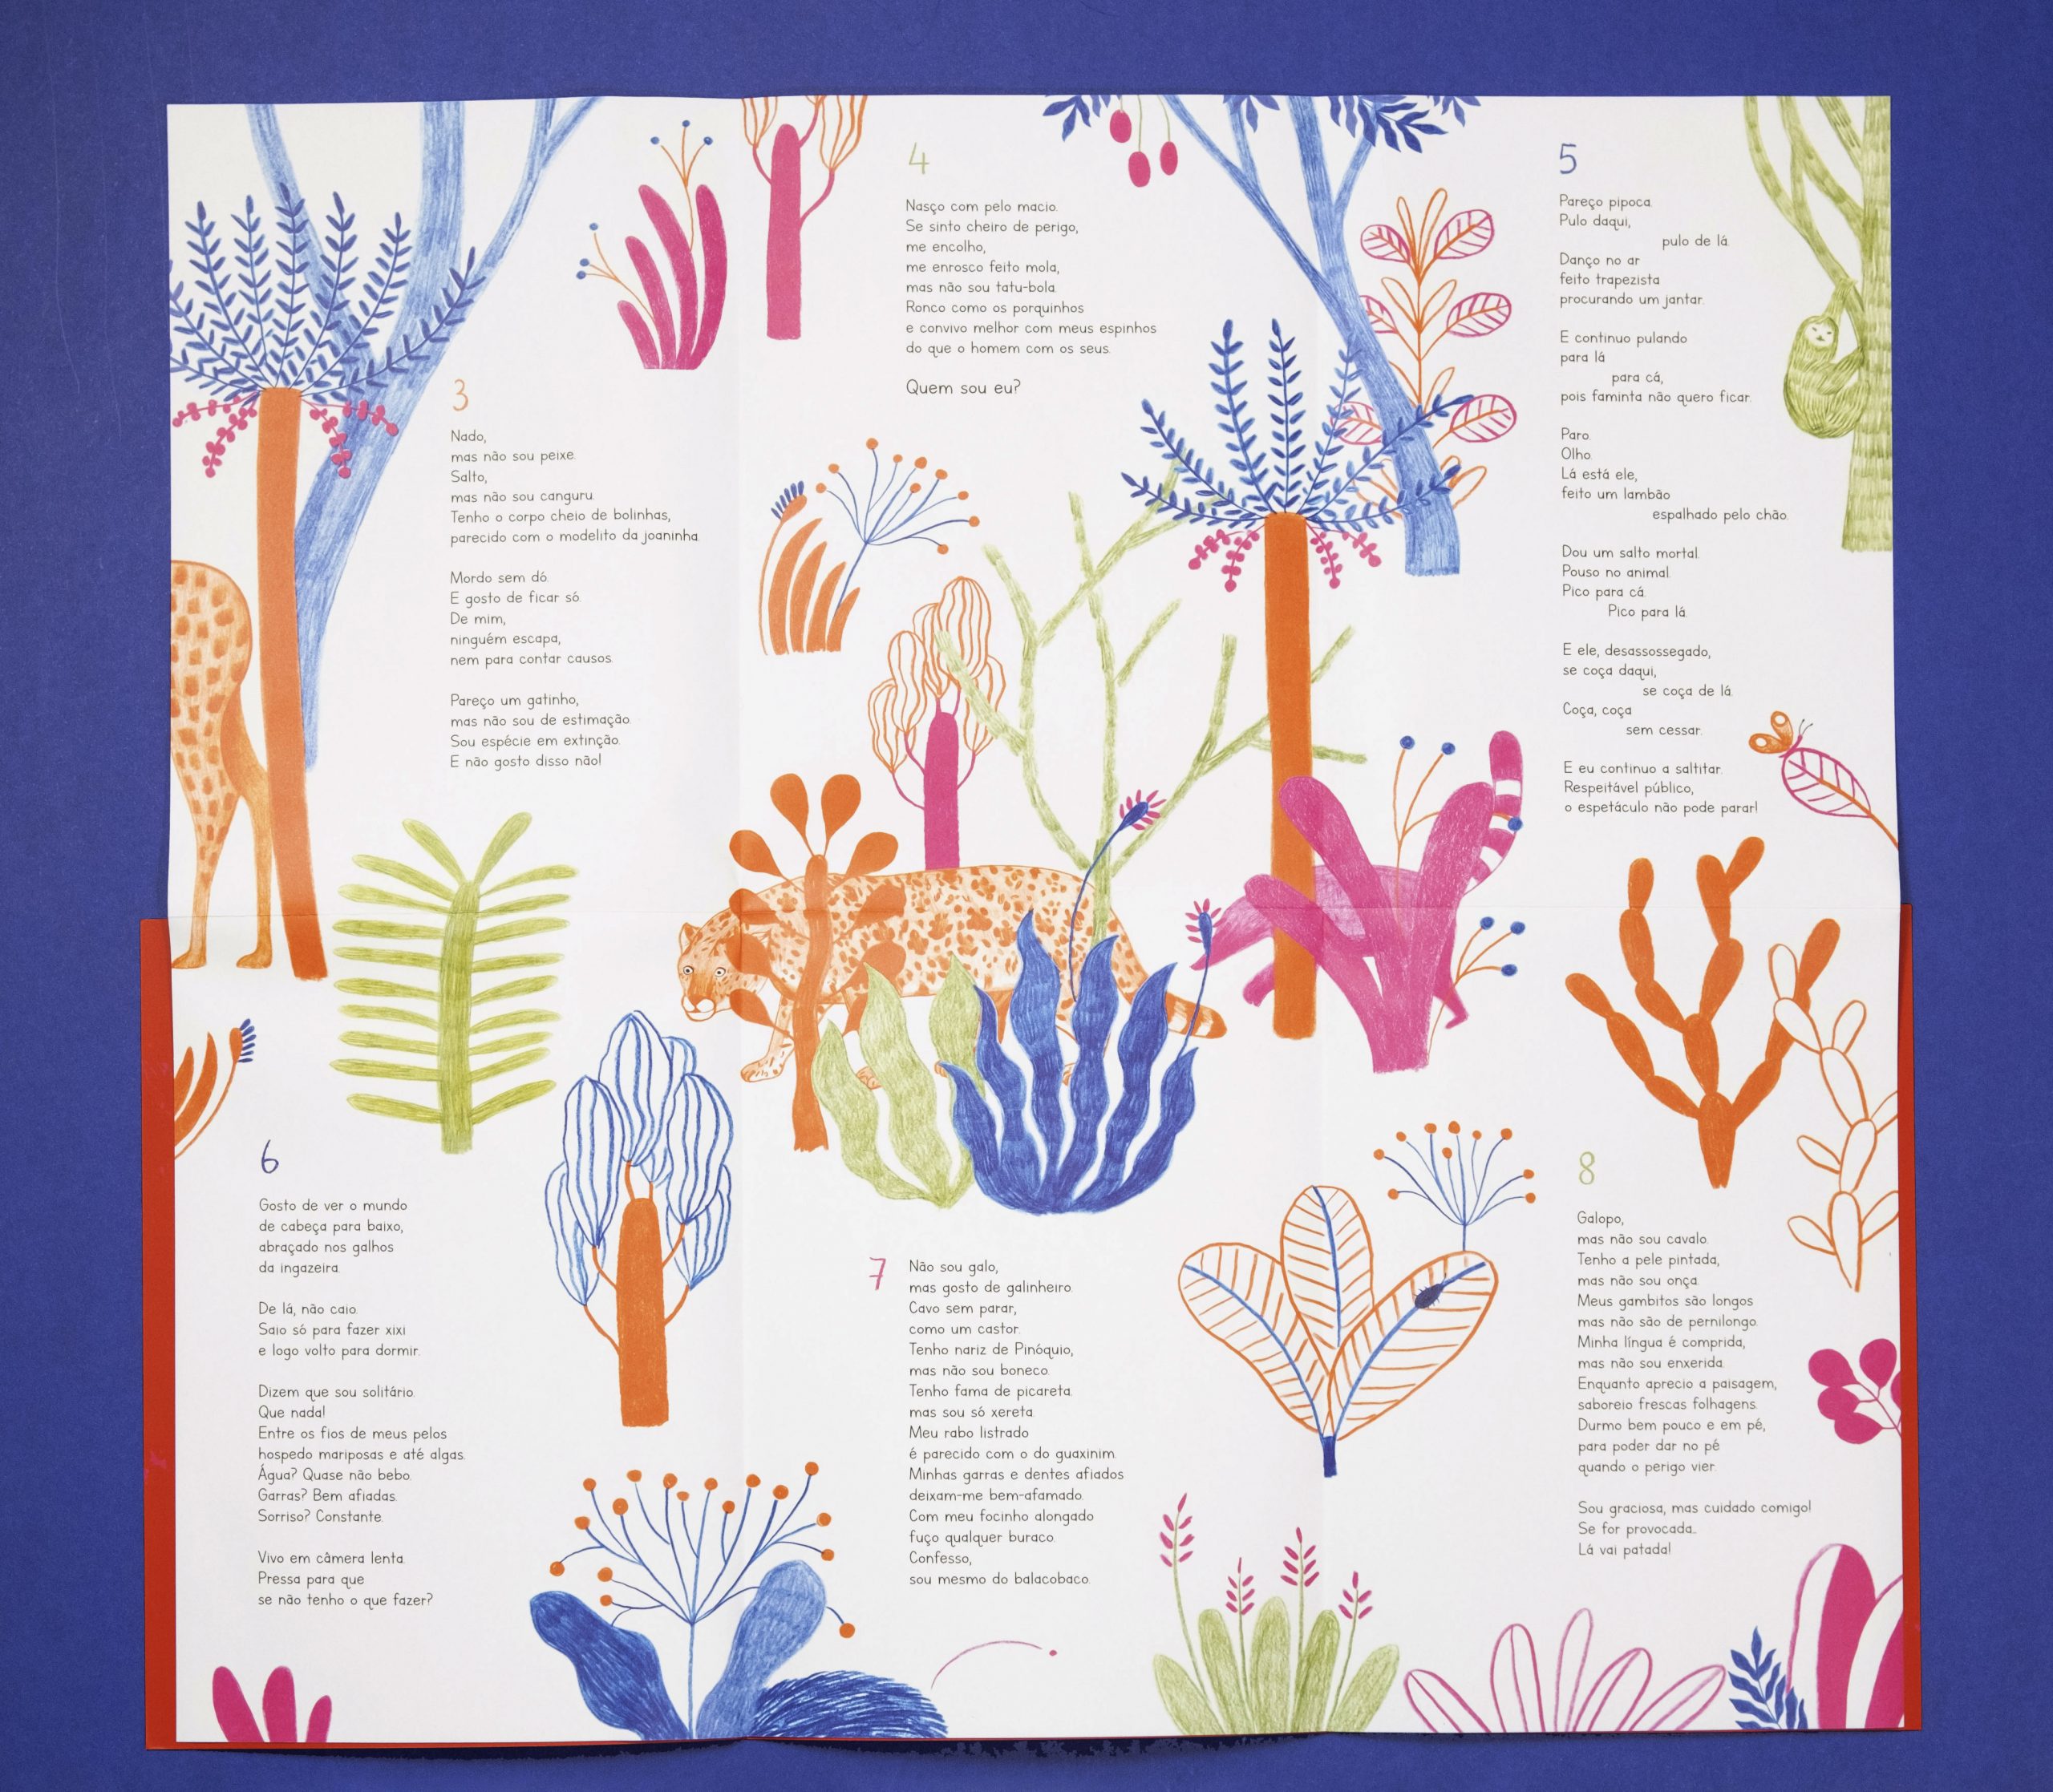 Miolo do livro "Bicho? Que bicho?" em formato de mapa e jogo com plantas coloridas e animais camuflados